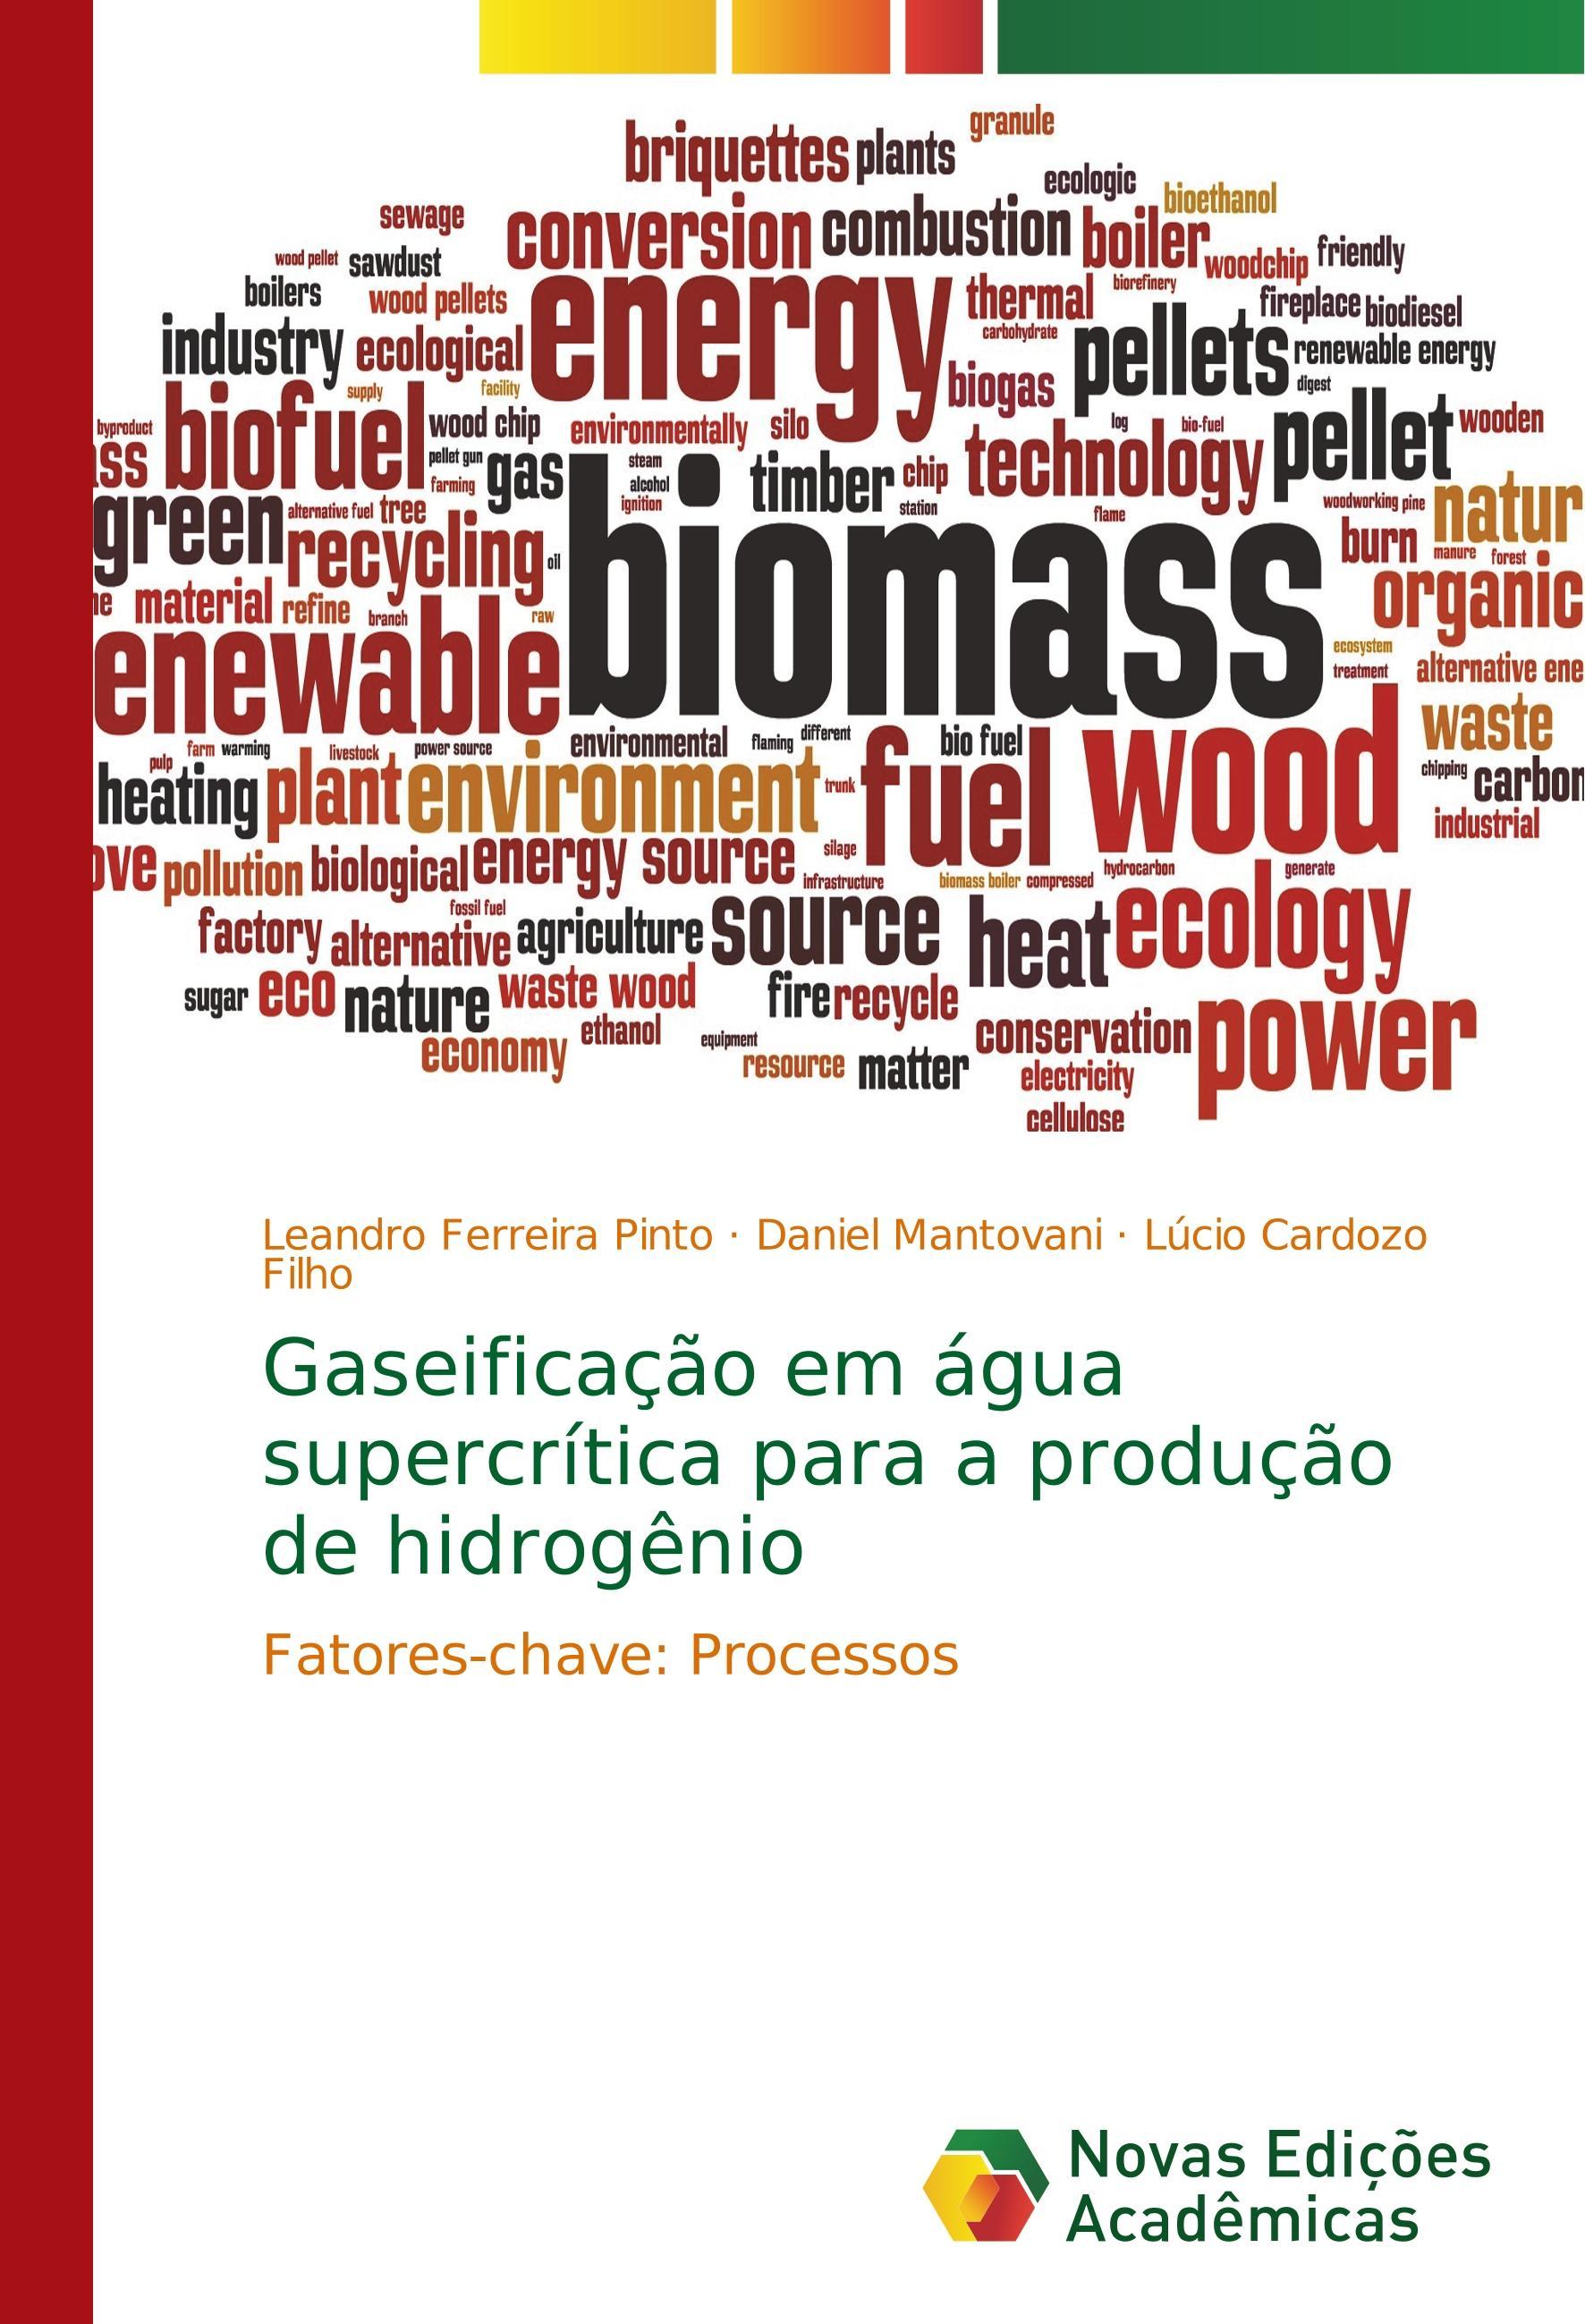 Gaseificação em água supercrítica para a produção de hidrogênio - Ferreira Pinto, Leandro Mantovani, Daniel Cardozo Filho, Lúcio